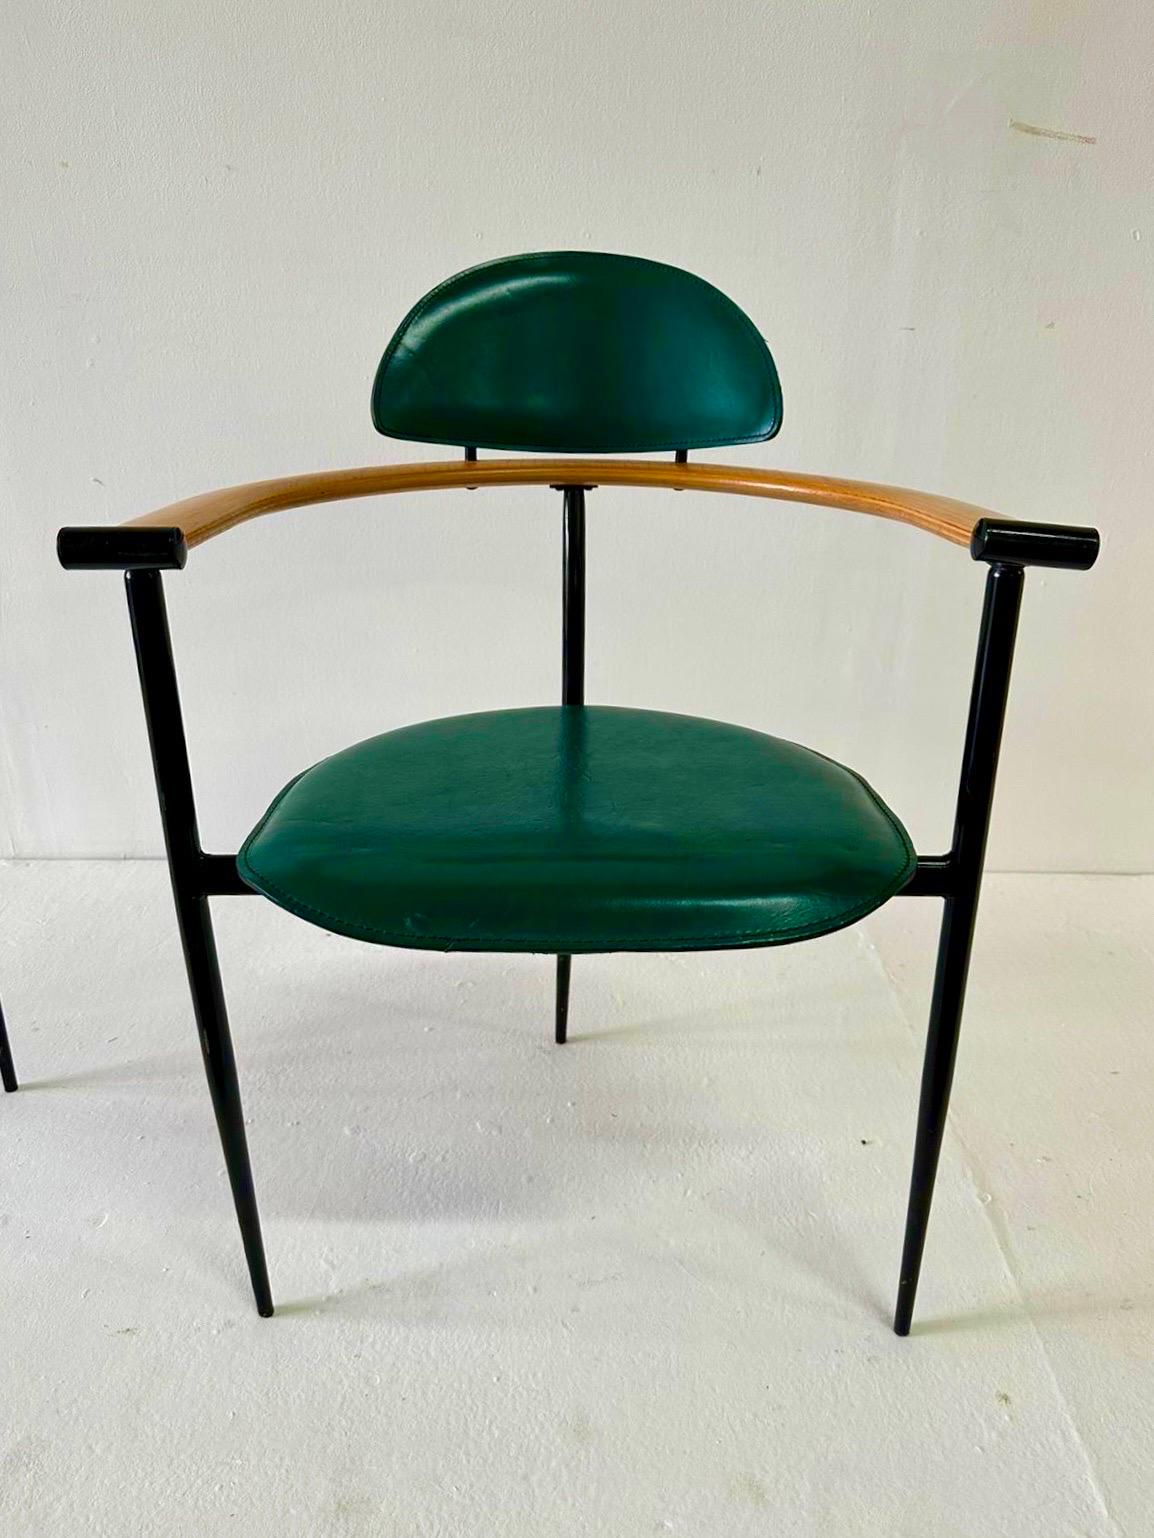 Ces chaises italiennes en cuir vert surpiqué avec accoudoirs en bois naturel et structure en acier sont signées ARRBEN ITALIA.  Les quatre chaises sont toutes d'époque et tout simplement magnifiques.  Le vert est vif à la lumière - voir toutes les